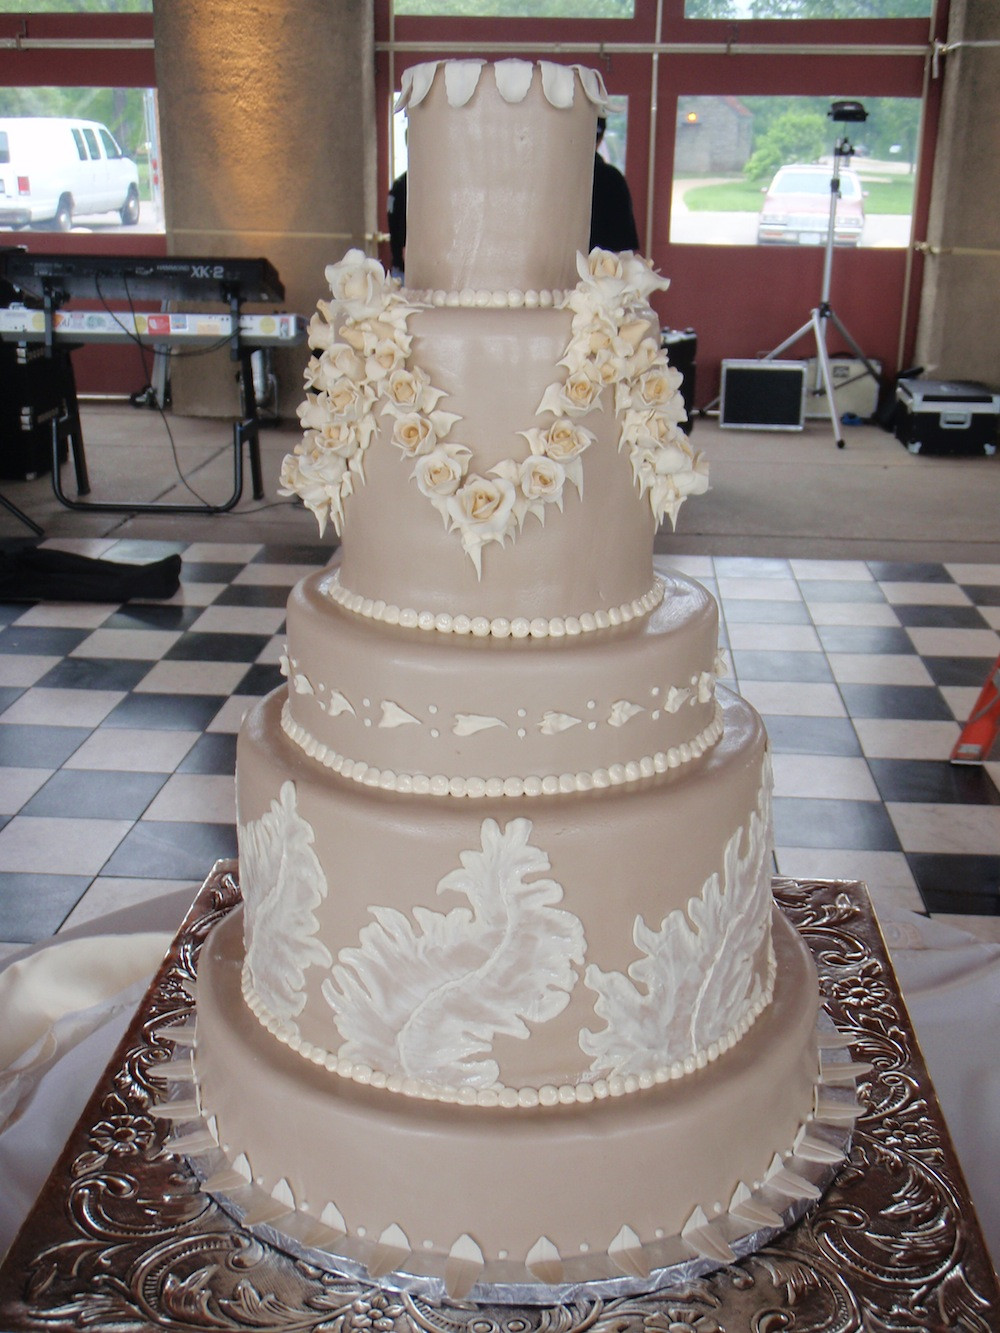 Wedding Cakes St Louis
 St louis wedding cakes idea in 2017